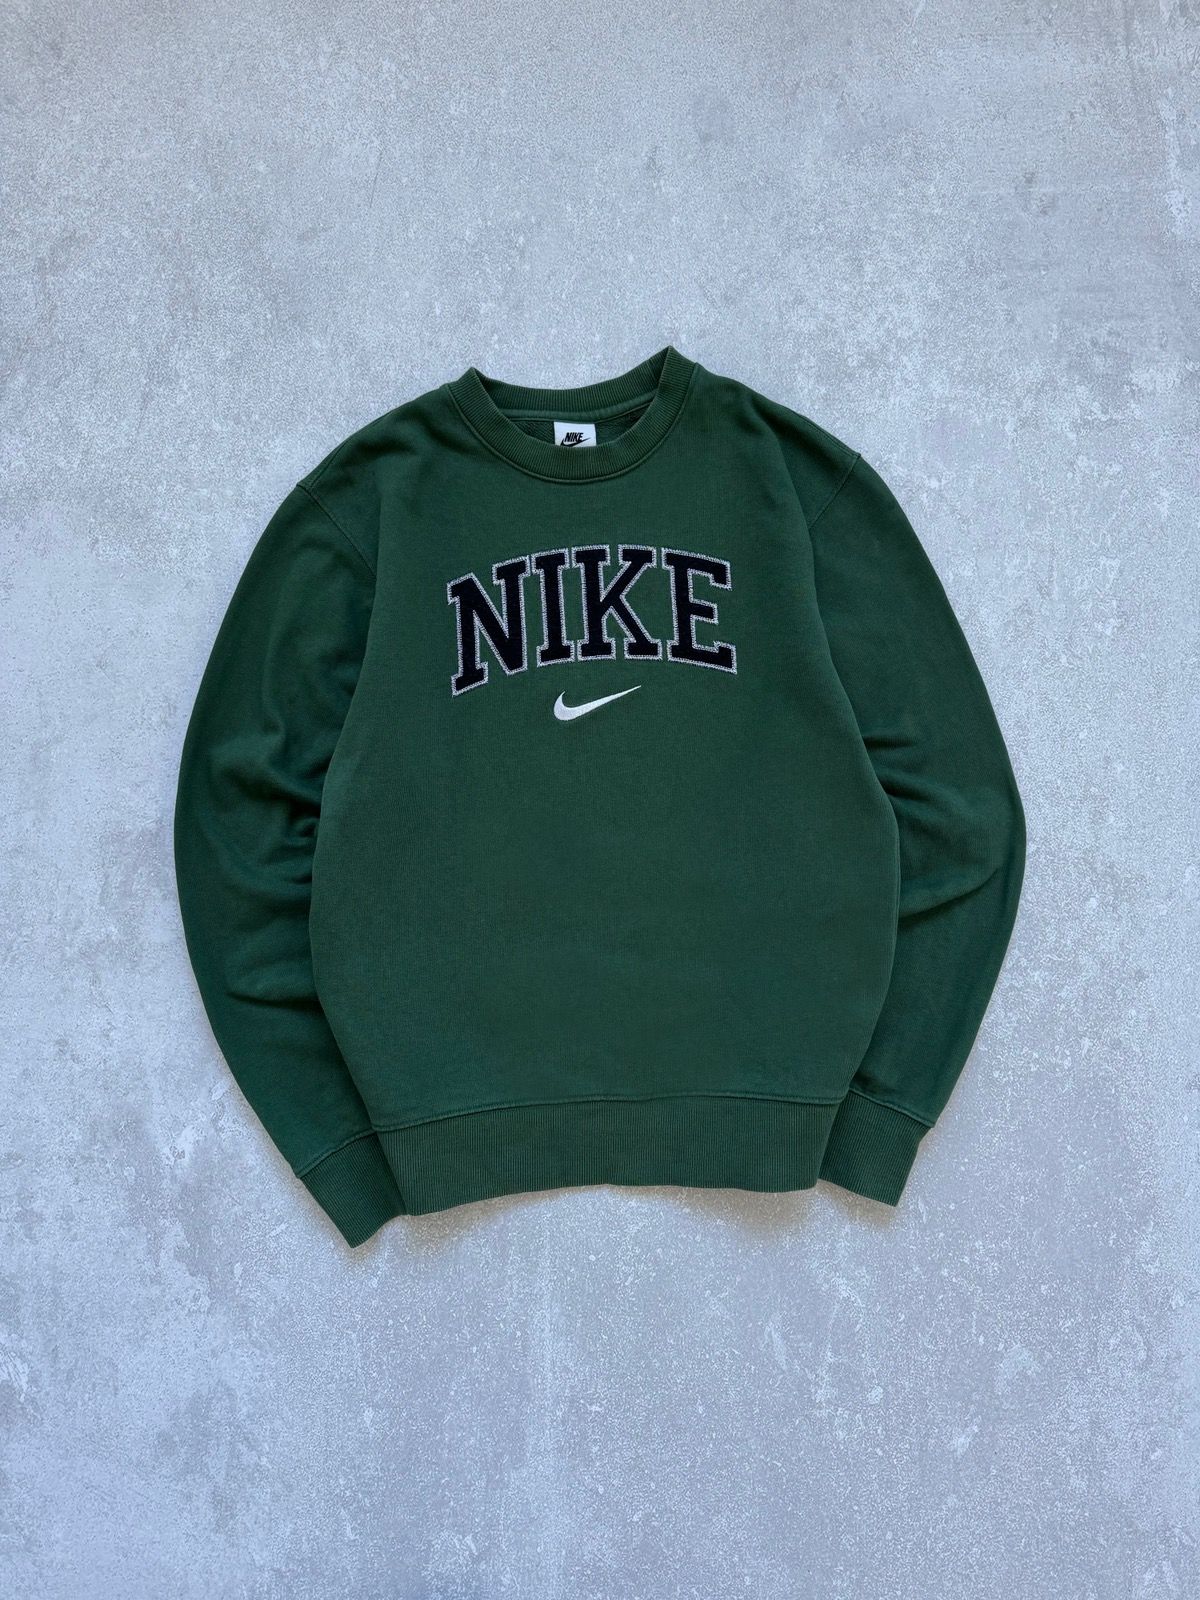 Pre-owned Nike X Vintage Nike Green Sweatshirt Big Logo Vintage Style